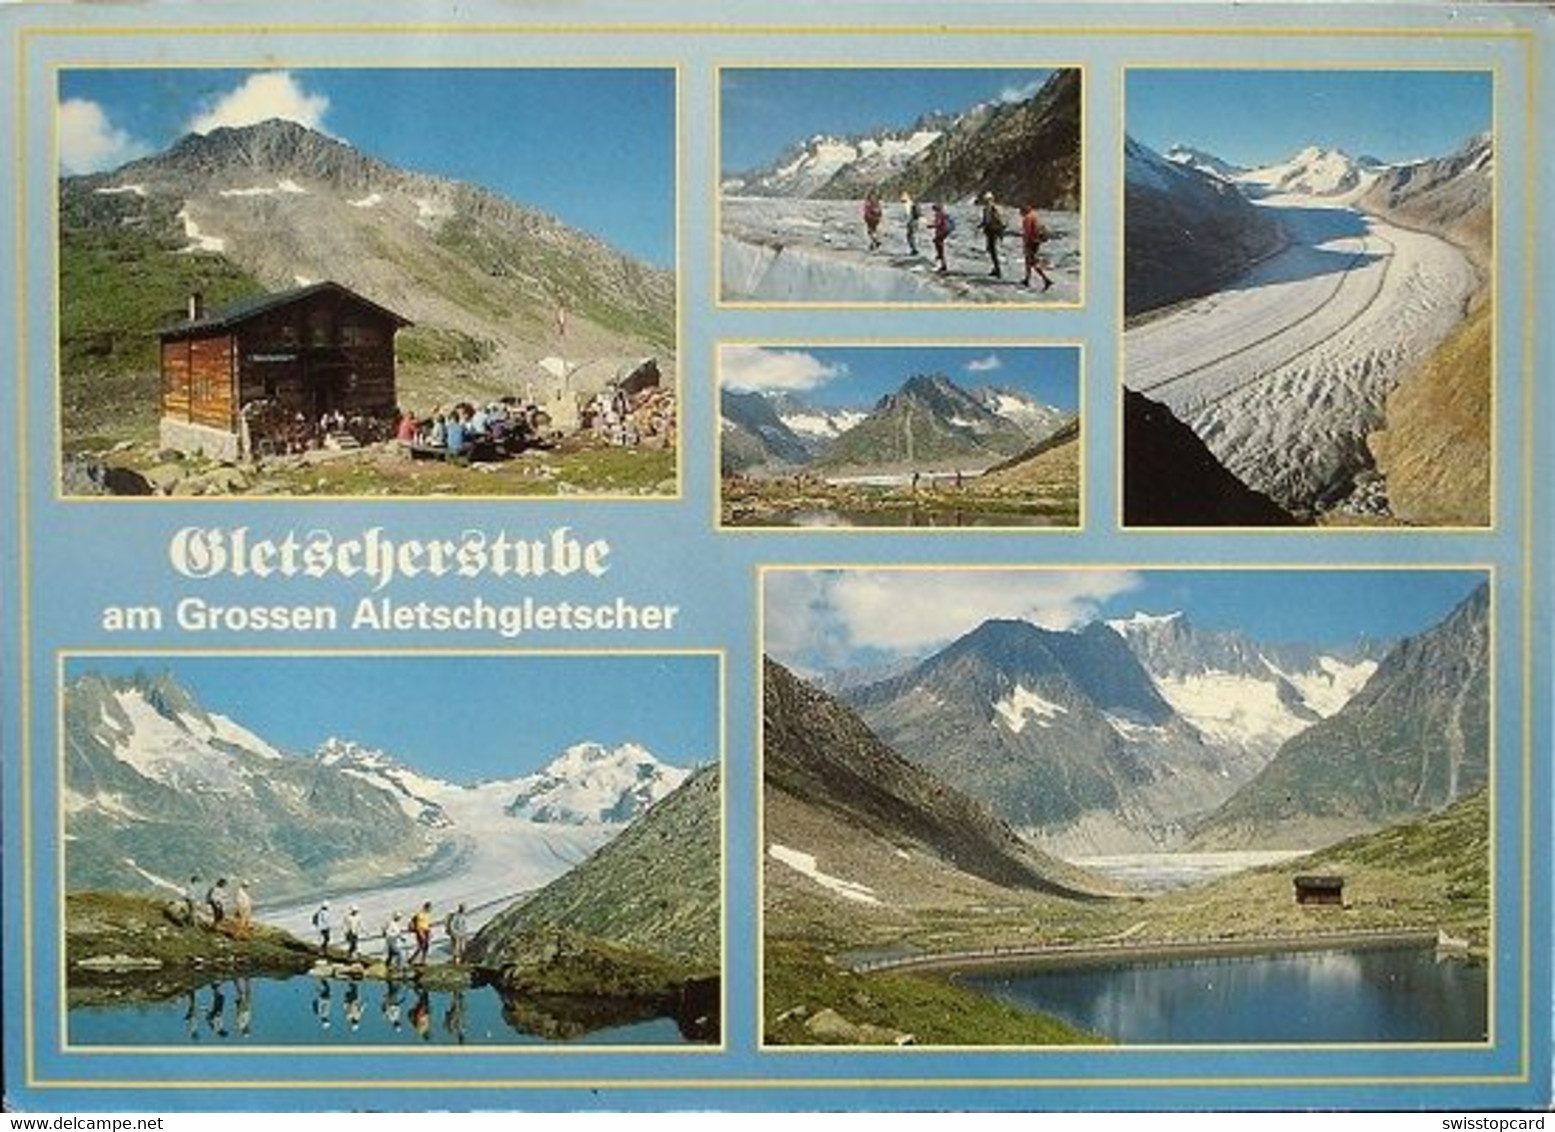 FIESCH Gletscherstube Herbert Volken Bergführer - Fiesch